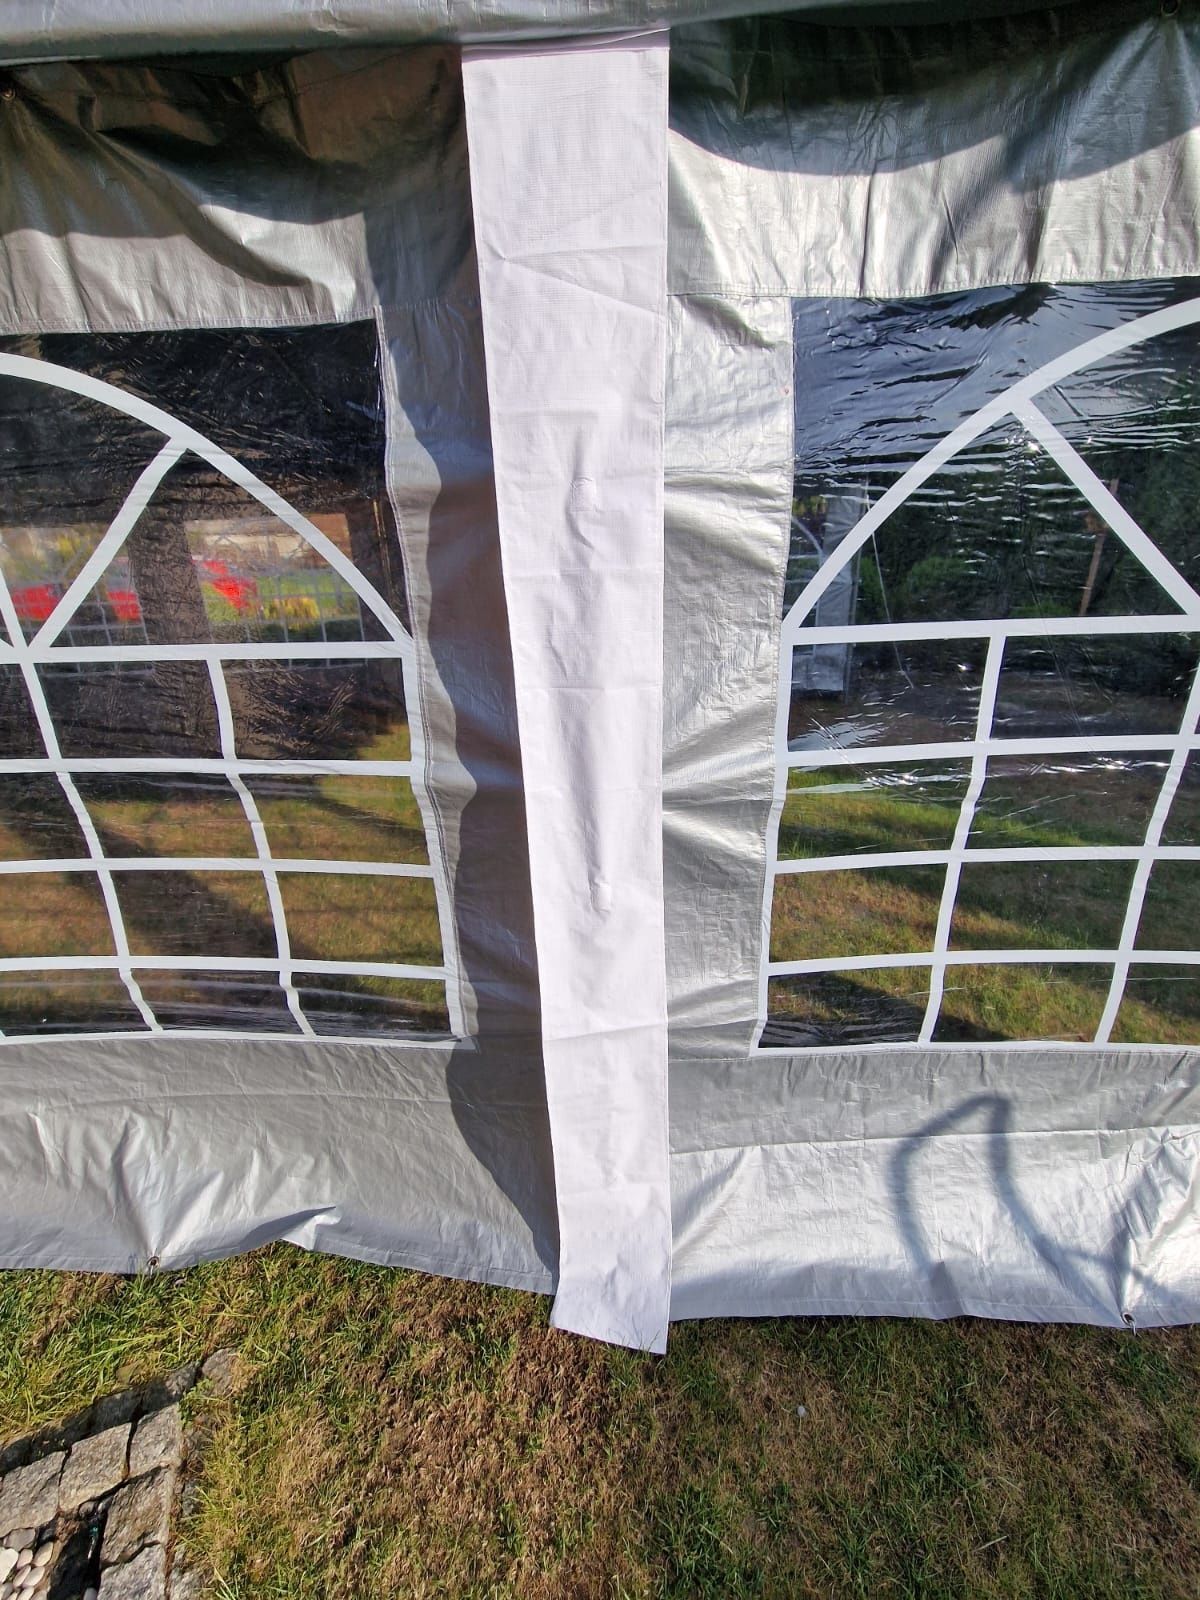 Namiot imprezowy 5m x 10m (Kołobrzeg, Trzebiatów, Koszalin, Świdwin)